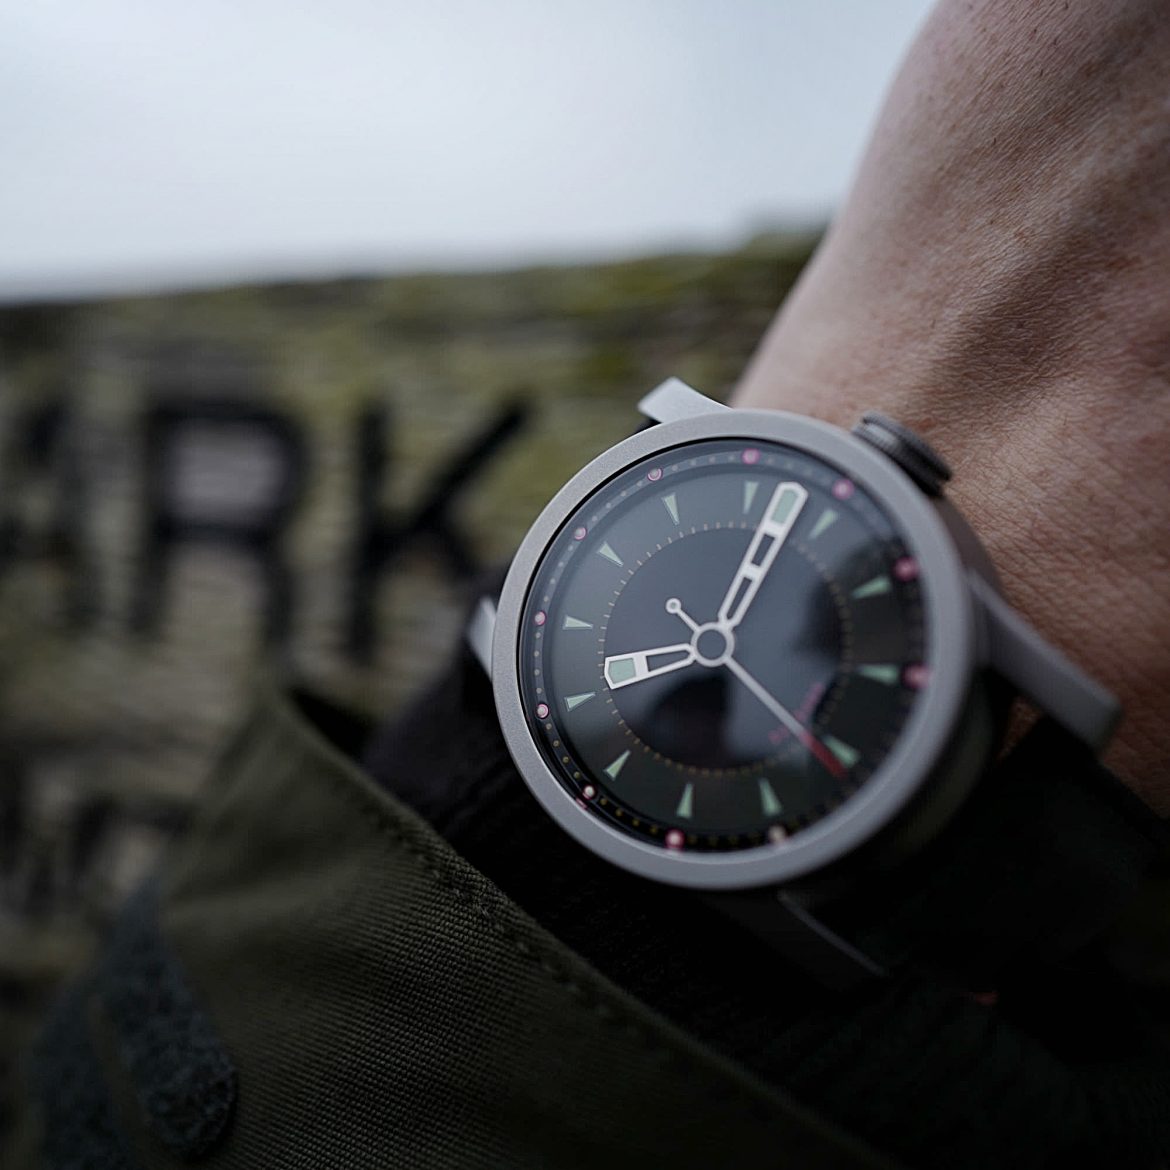 Daymark watch